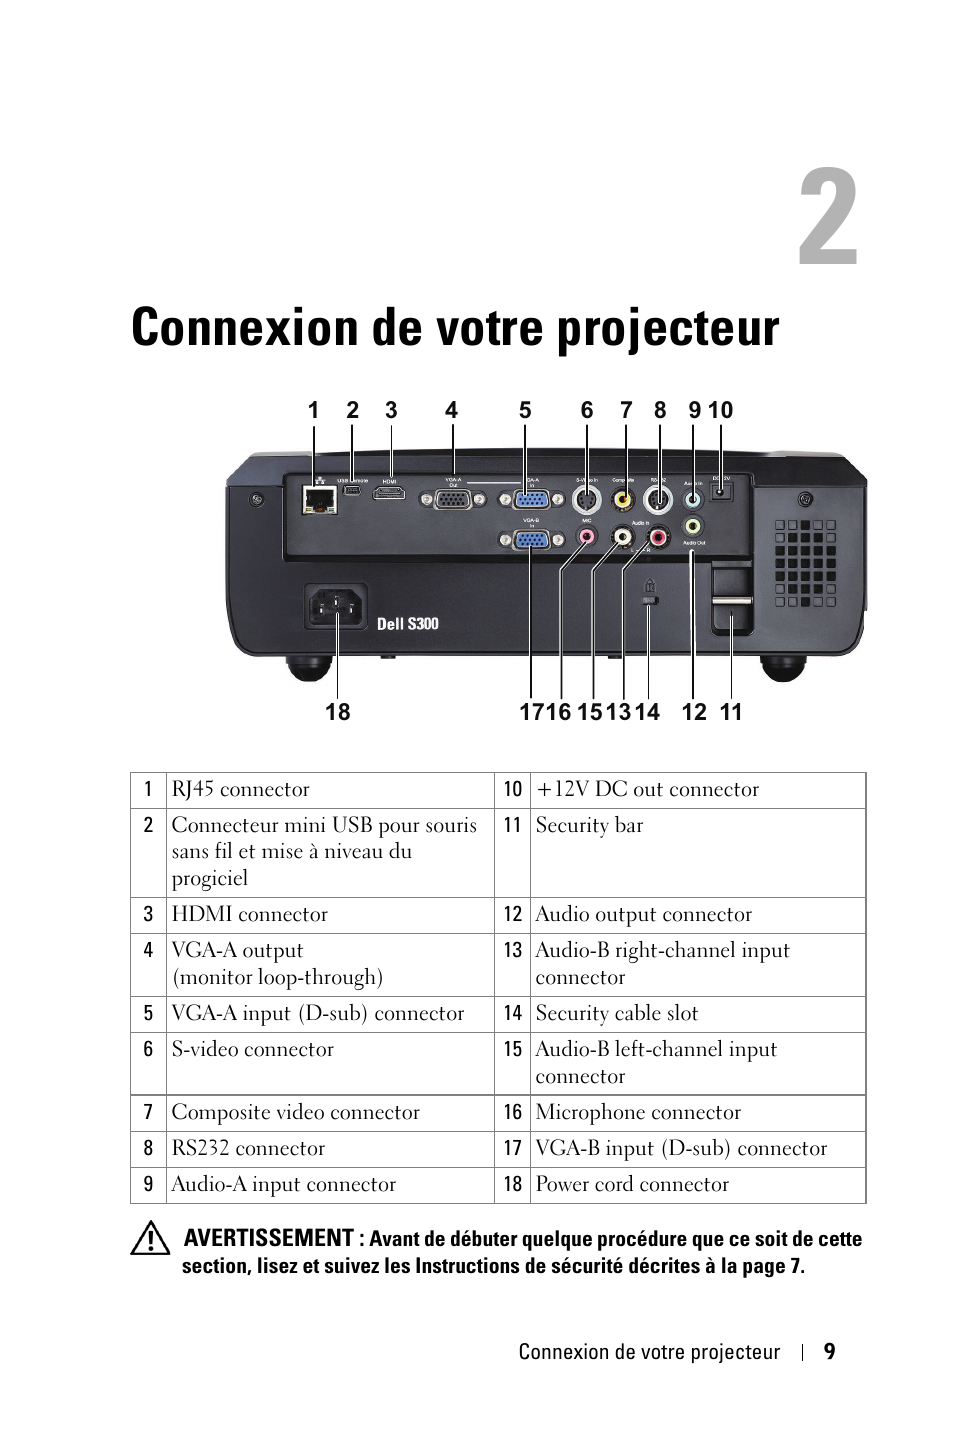 Connexion de votre projecteur | Dell S300 Projector Manuel d'utilisation | Page 9 / 81